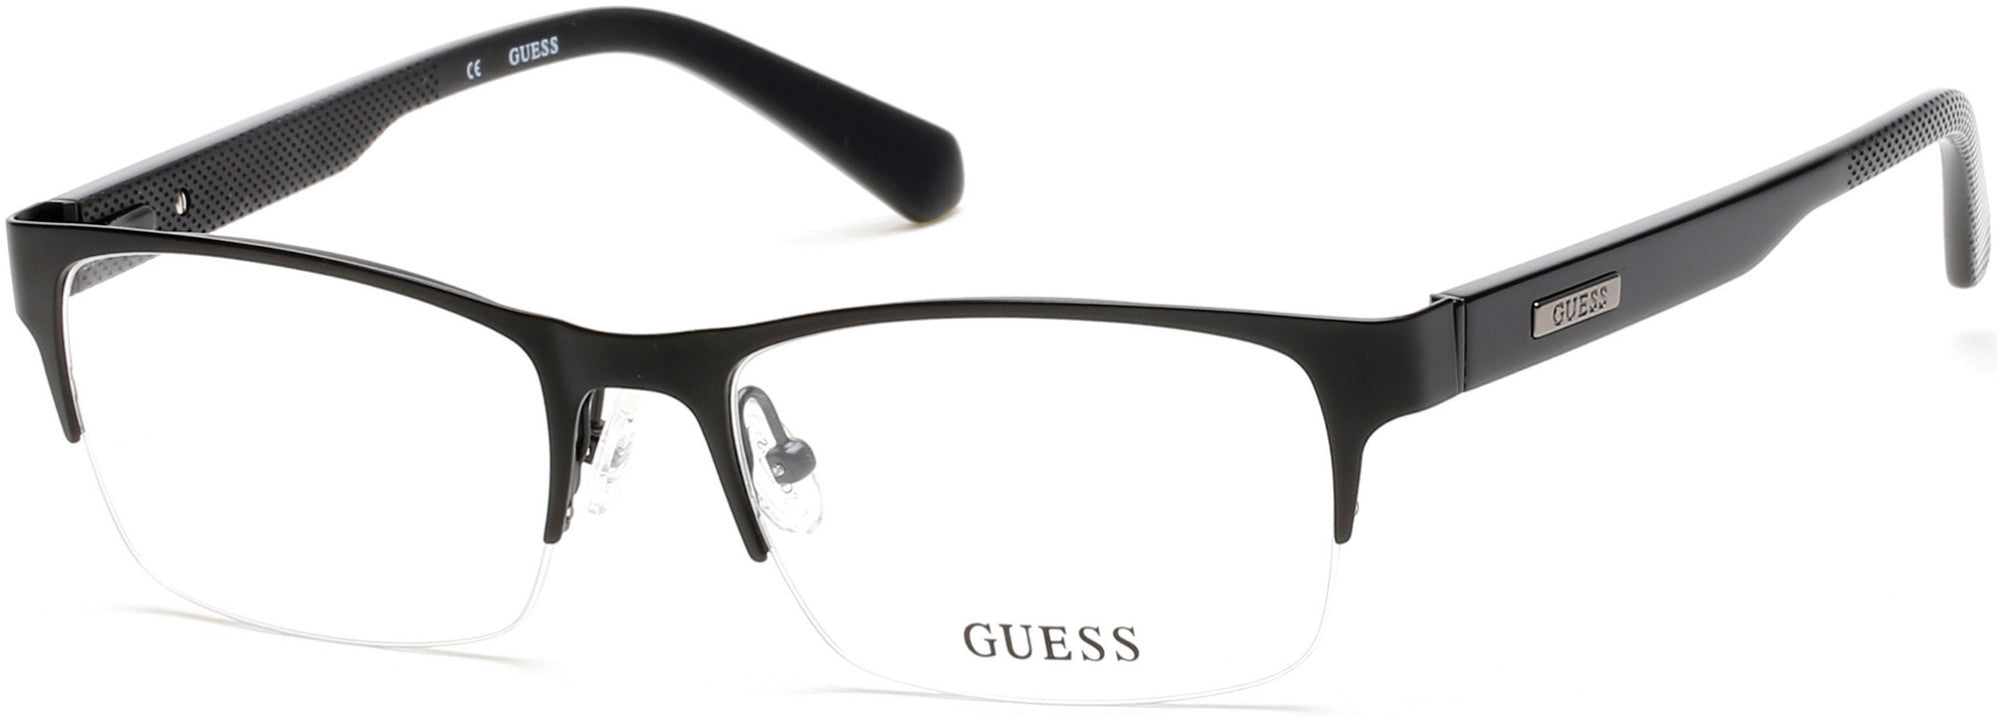 Guess GU1859 Eyeglasses 002-002 - Matte Black